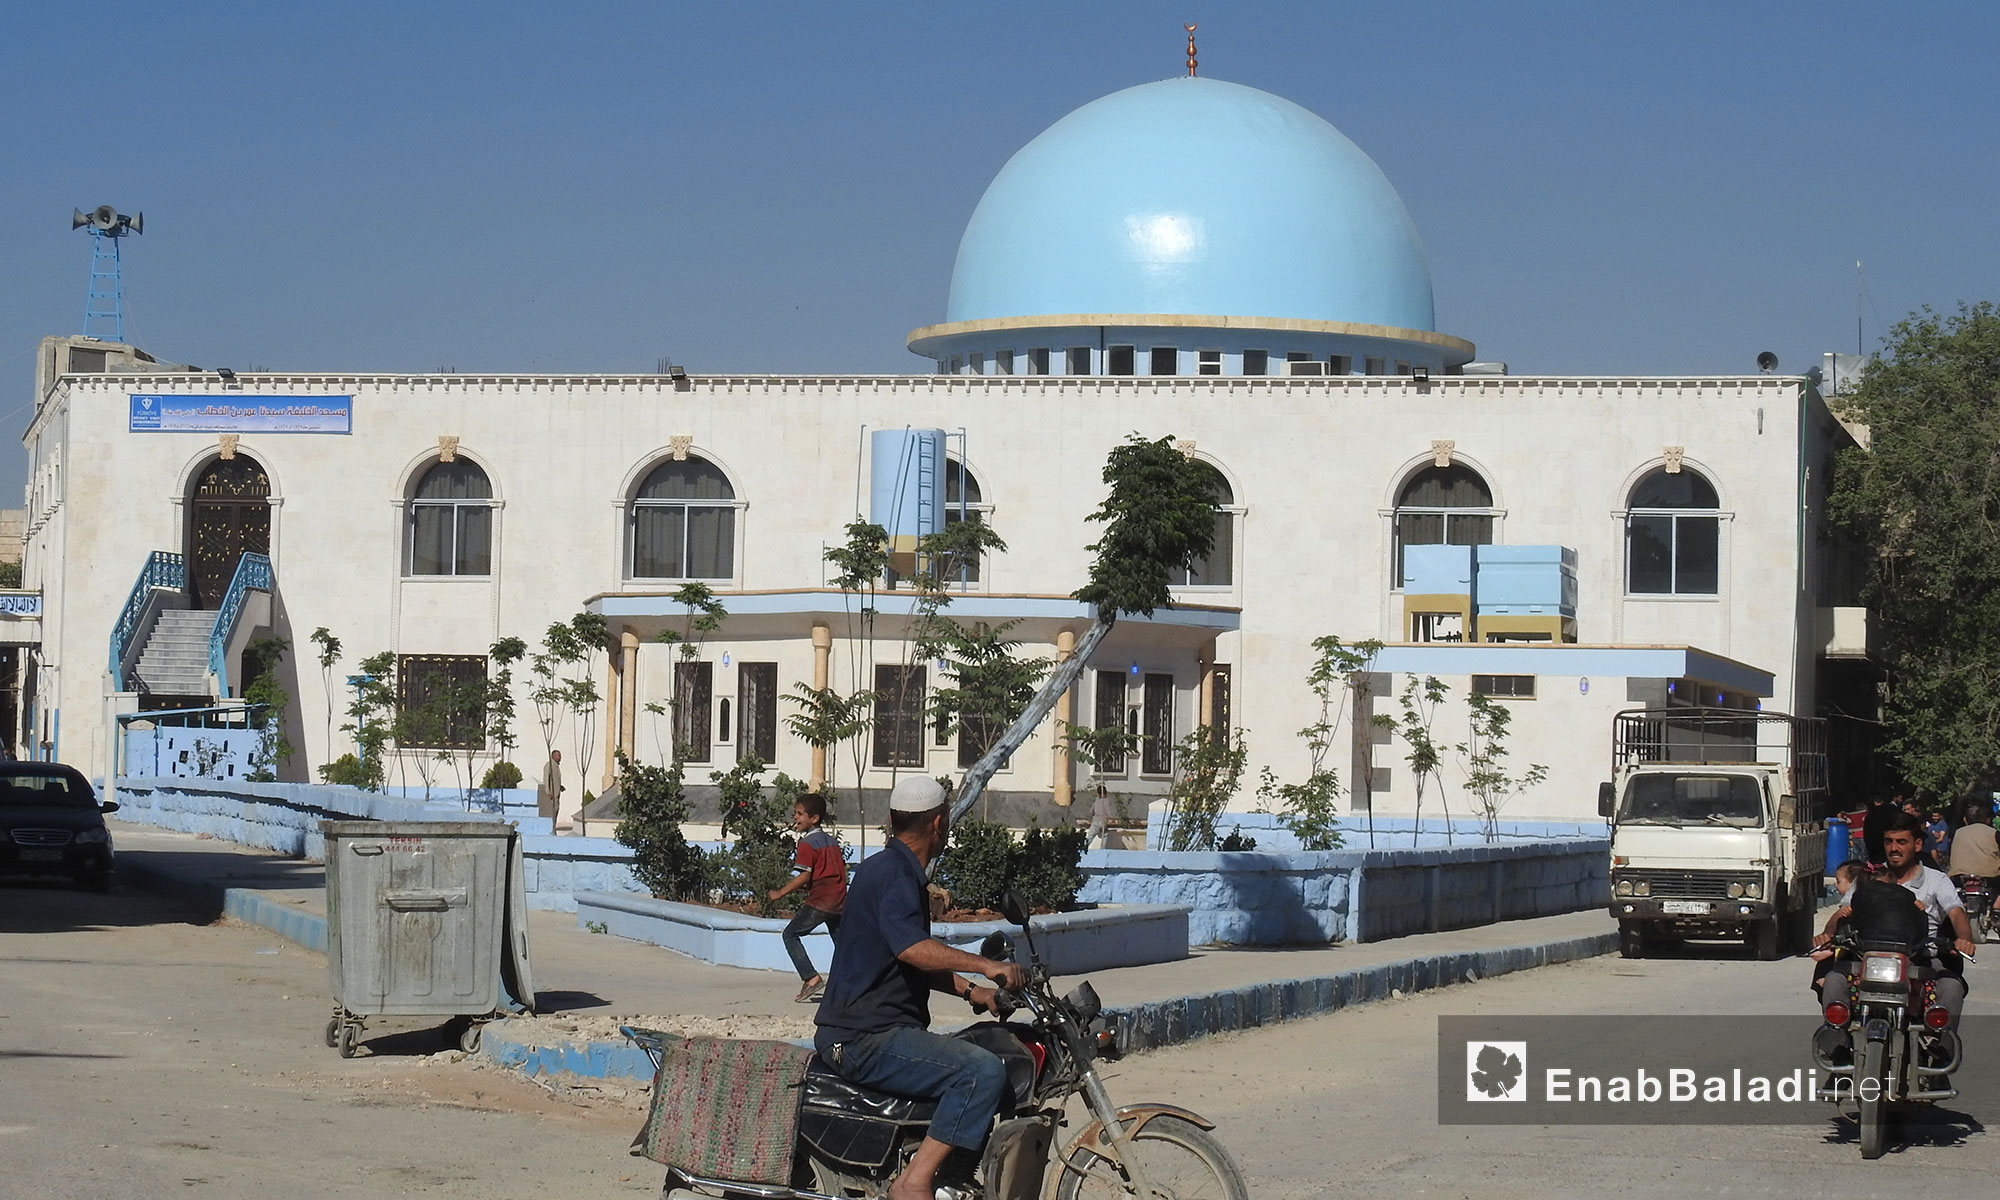 مسجد عمر بن الخطاب بمدينة الباب بعد أن قامت وقف الديانة التركية بترميمه - 29 أيار 2017 (عنب بلدي)